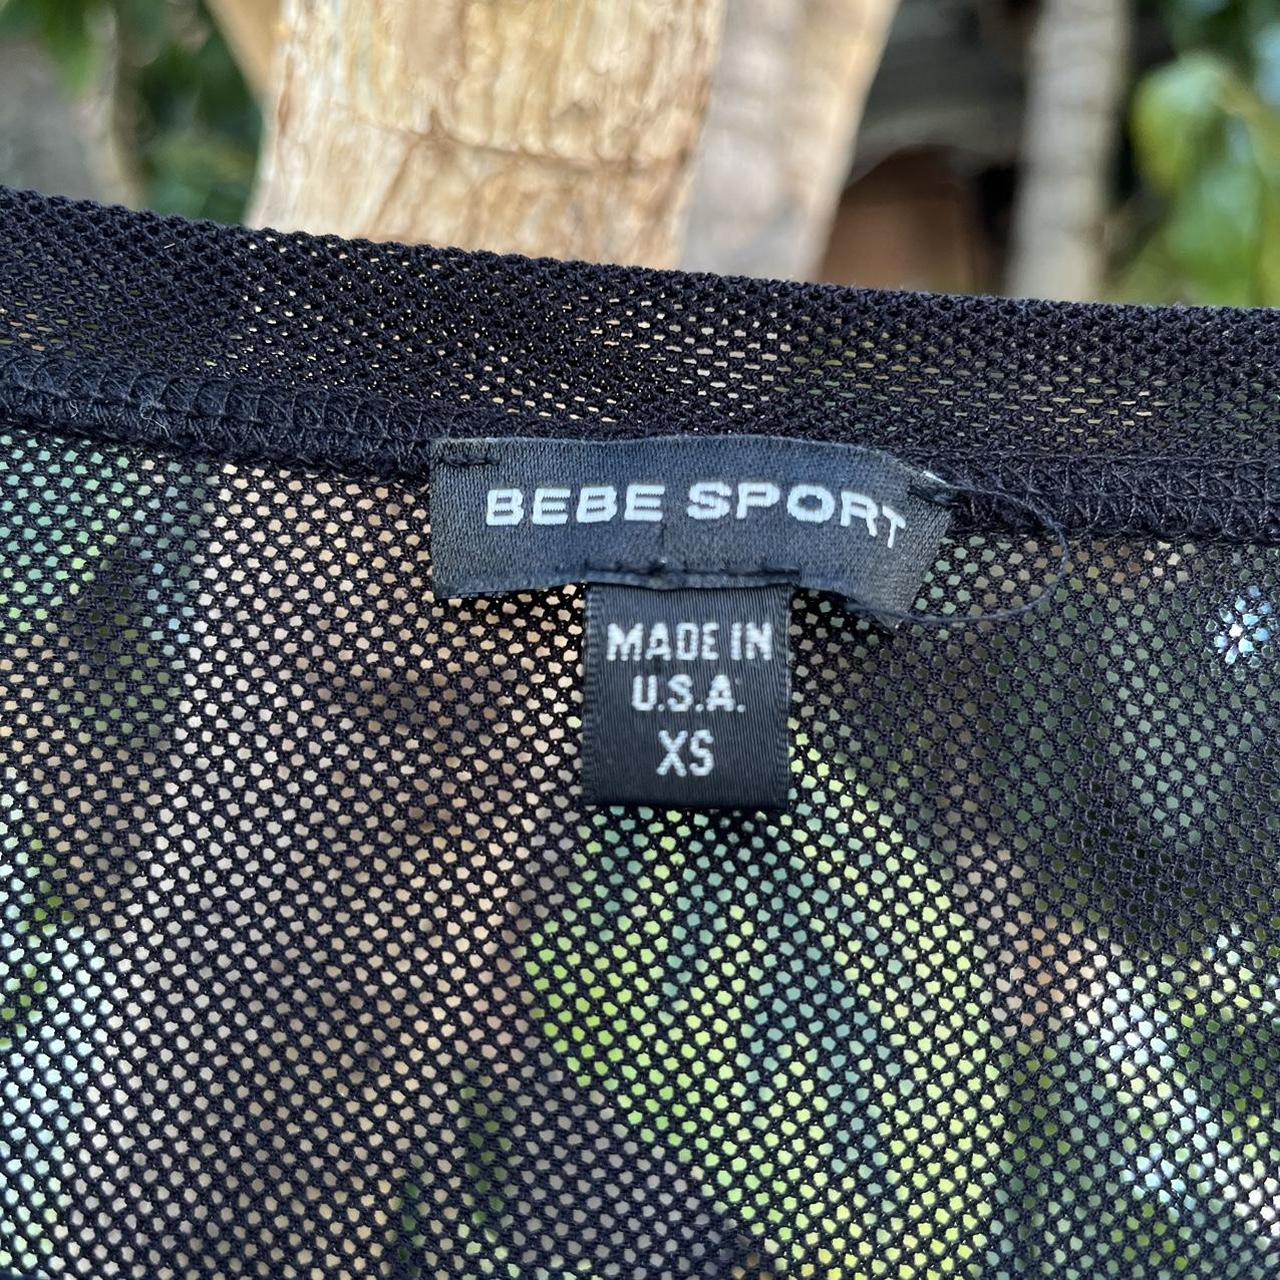 Vintage Y2K Bebe sport mesh fishnet tee! Made in the... - Depop